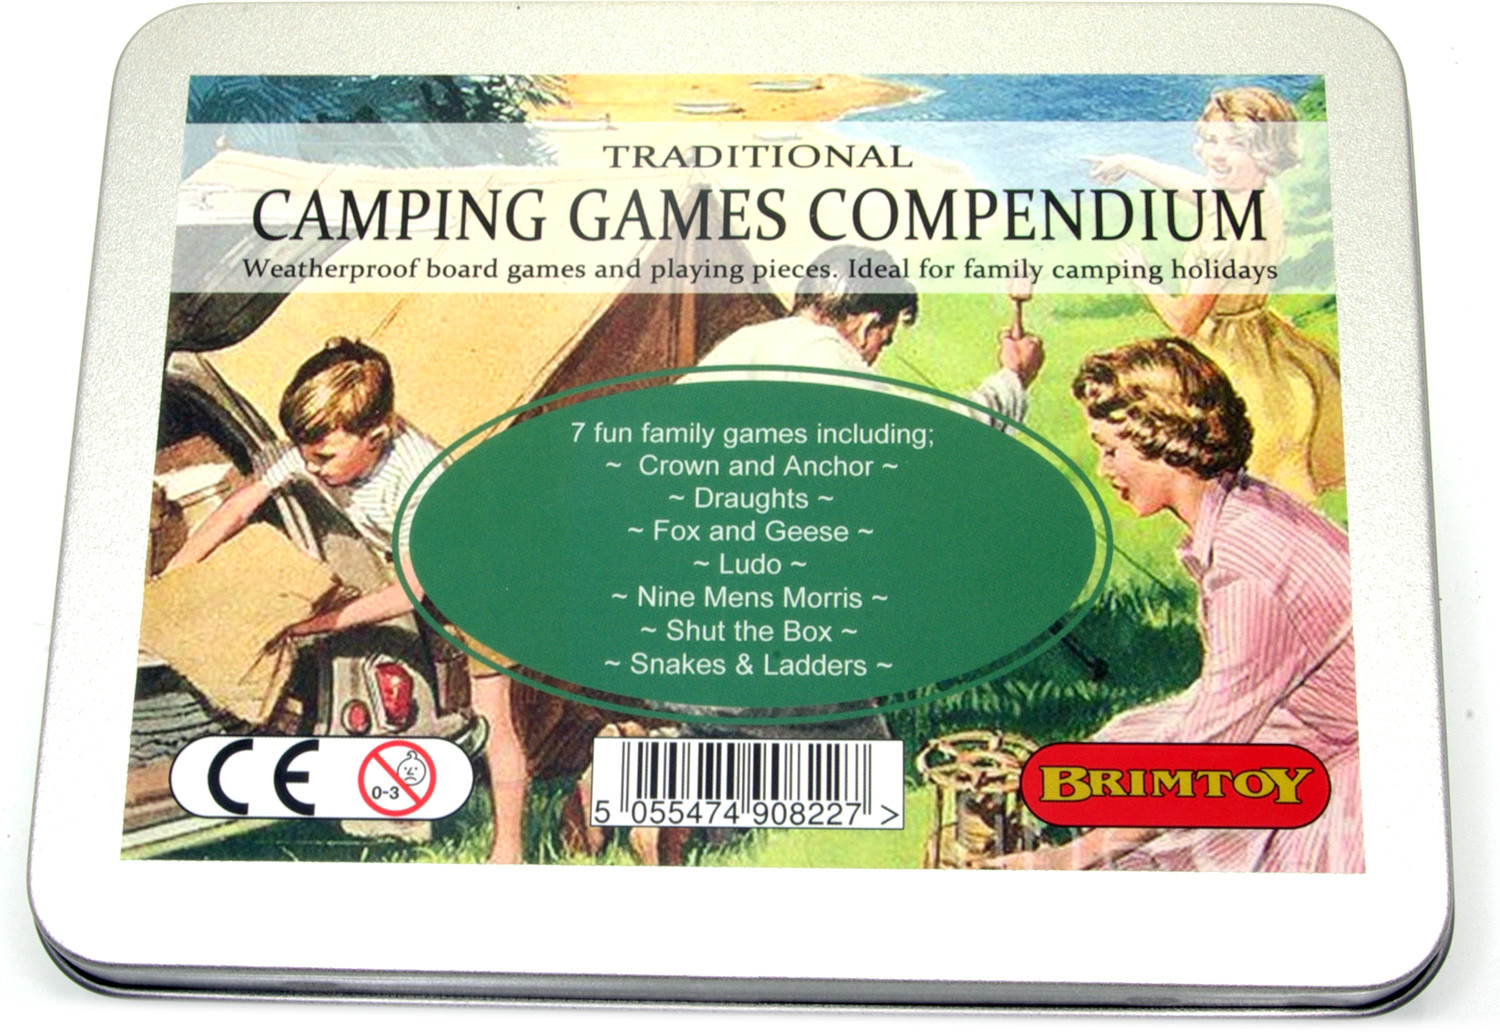 Camping games compendium